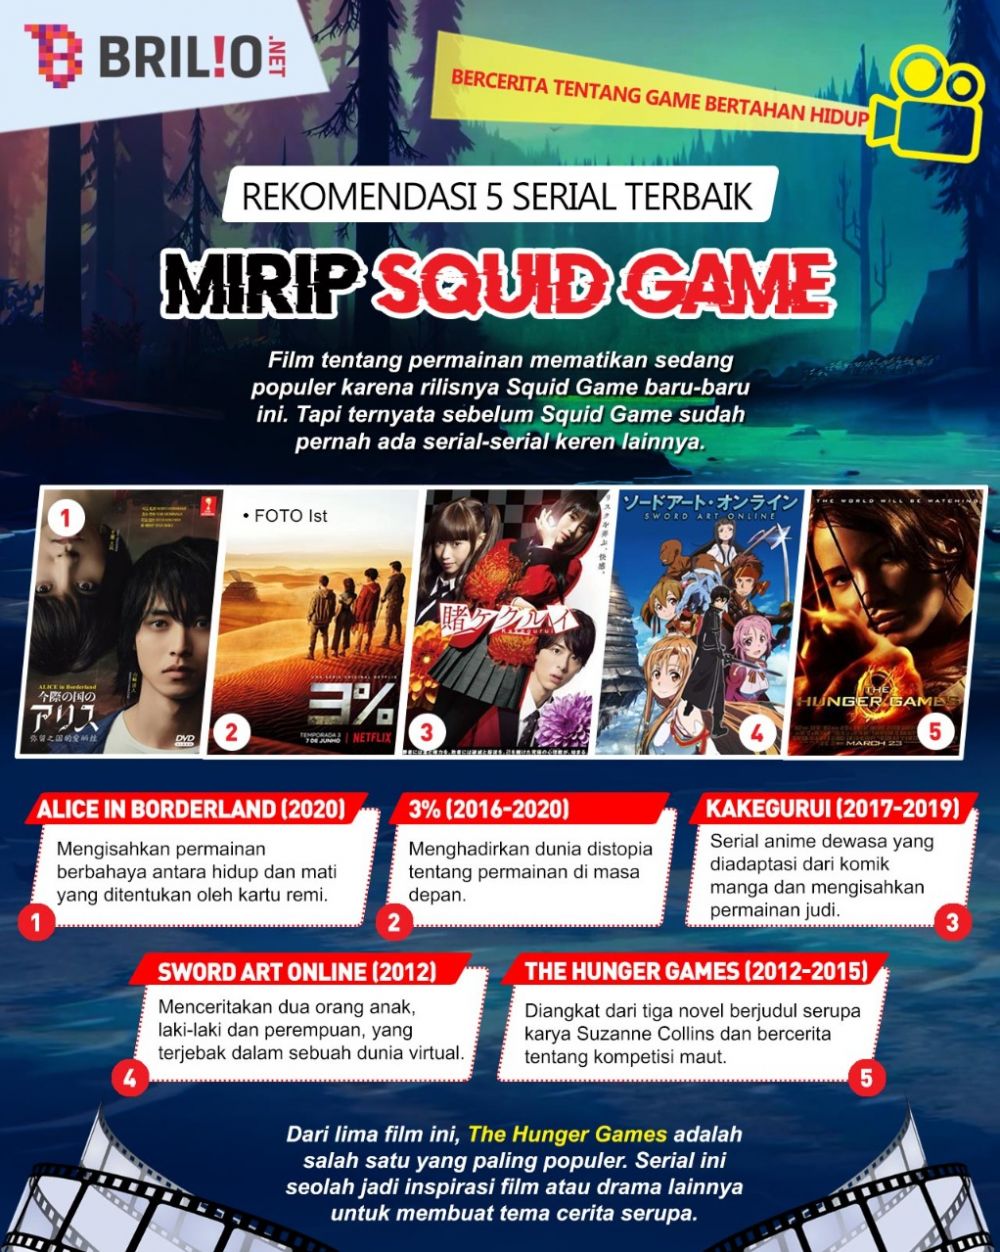 Selain Squid Game, 5 rekomendasi serial tentang game bertahan hidup